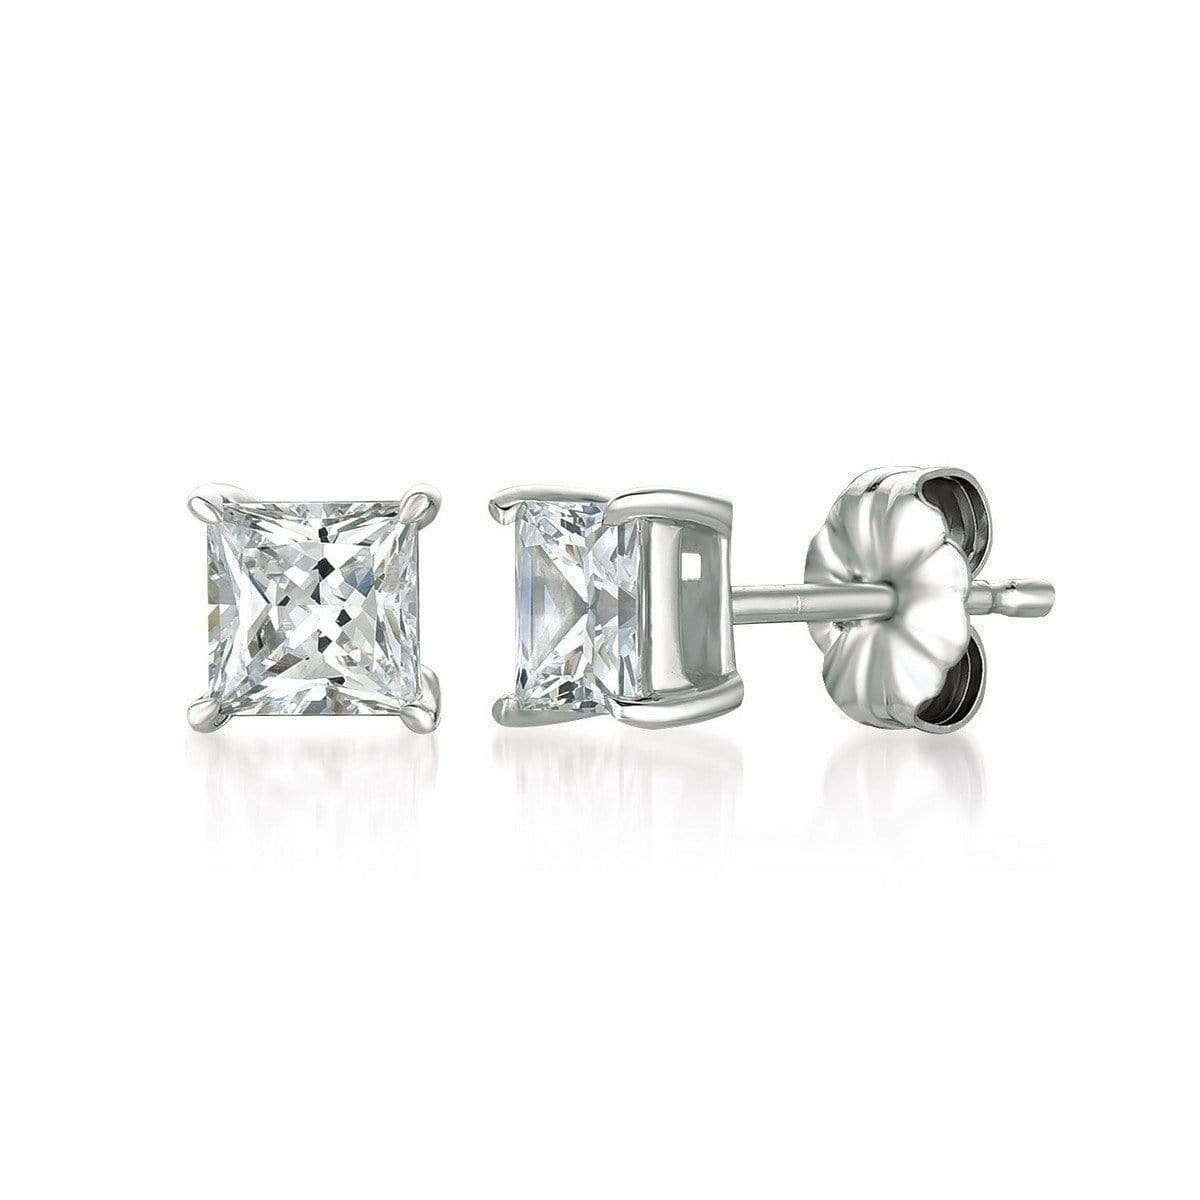 Crislu Jewelry CRISLU Solitaire Princess Earrings 1.50 Carat Finished in Pure Platinum